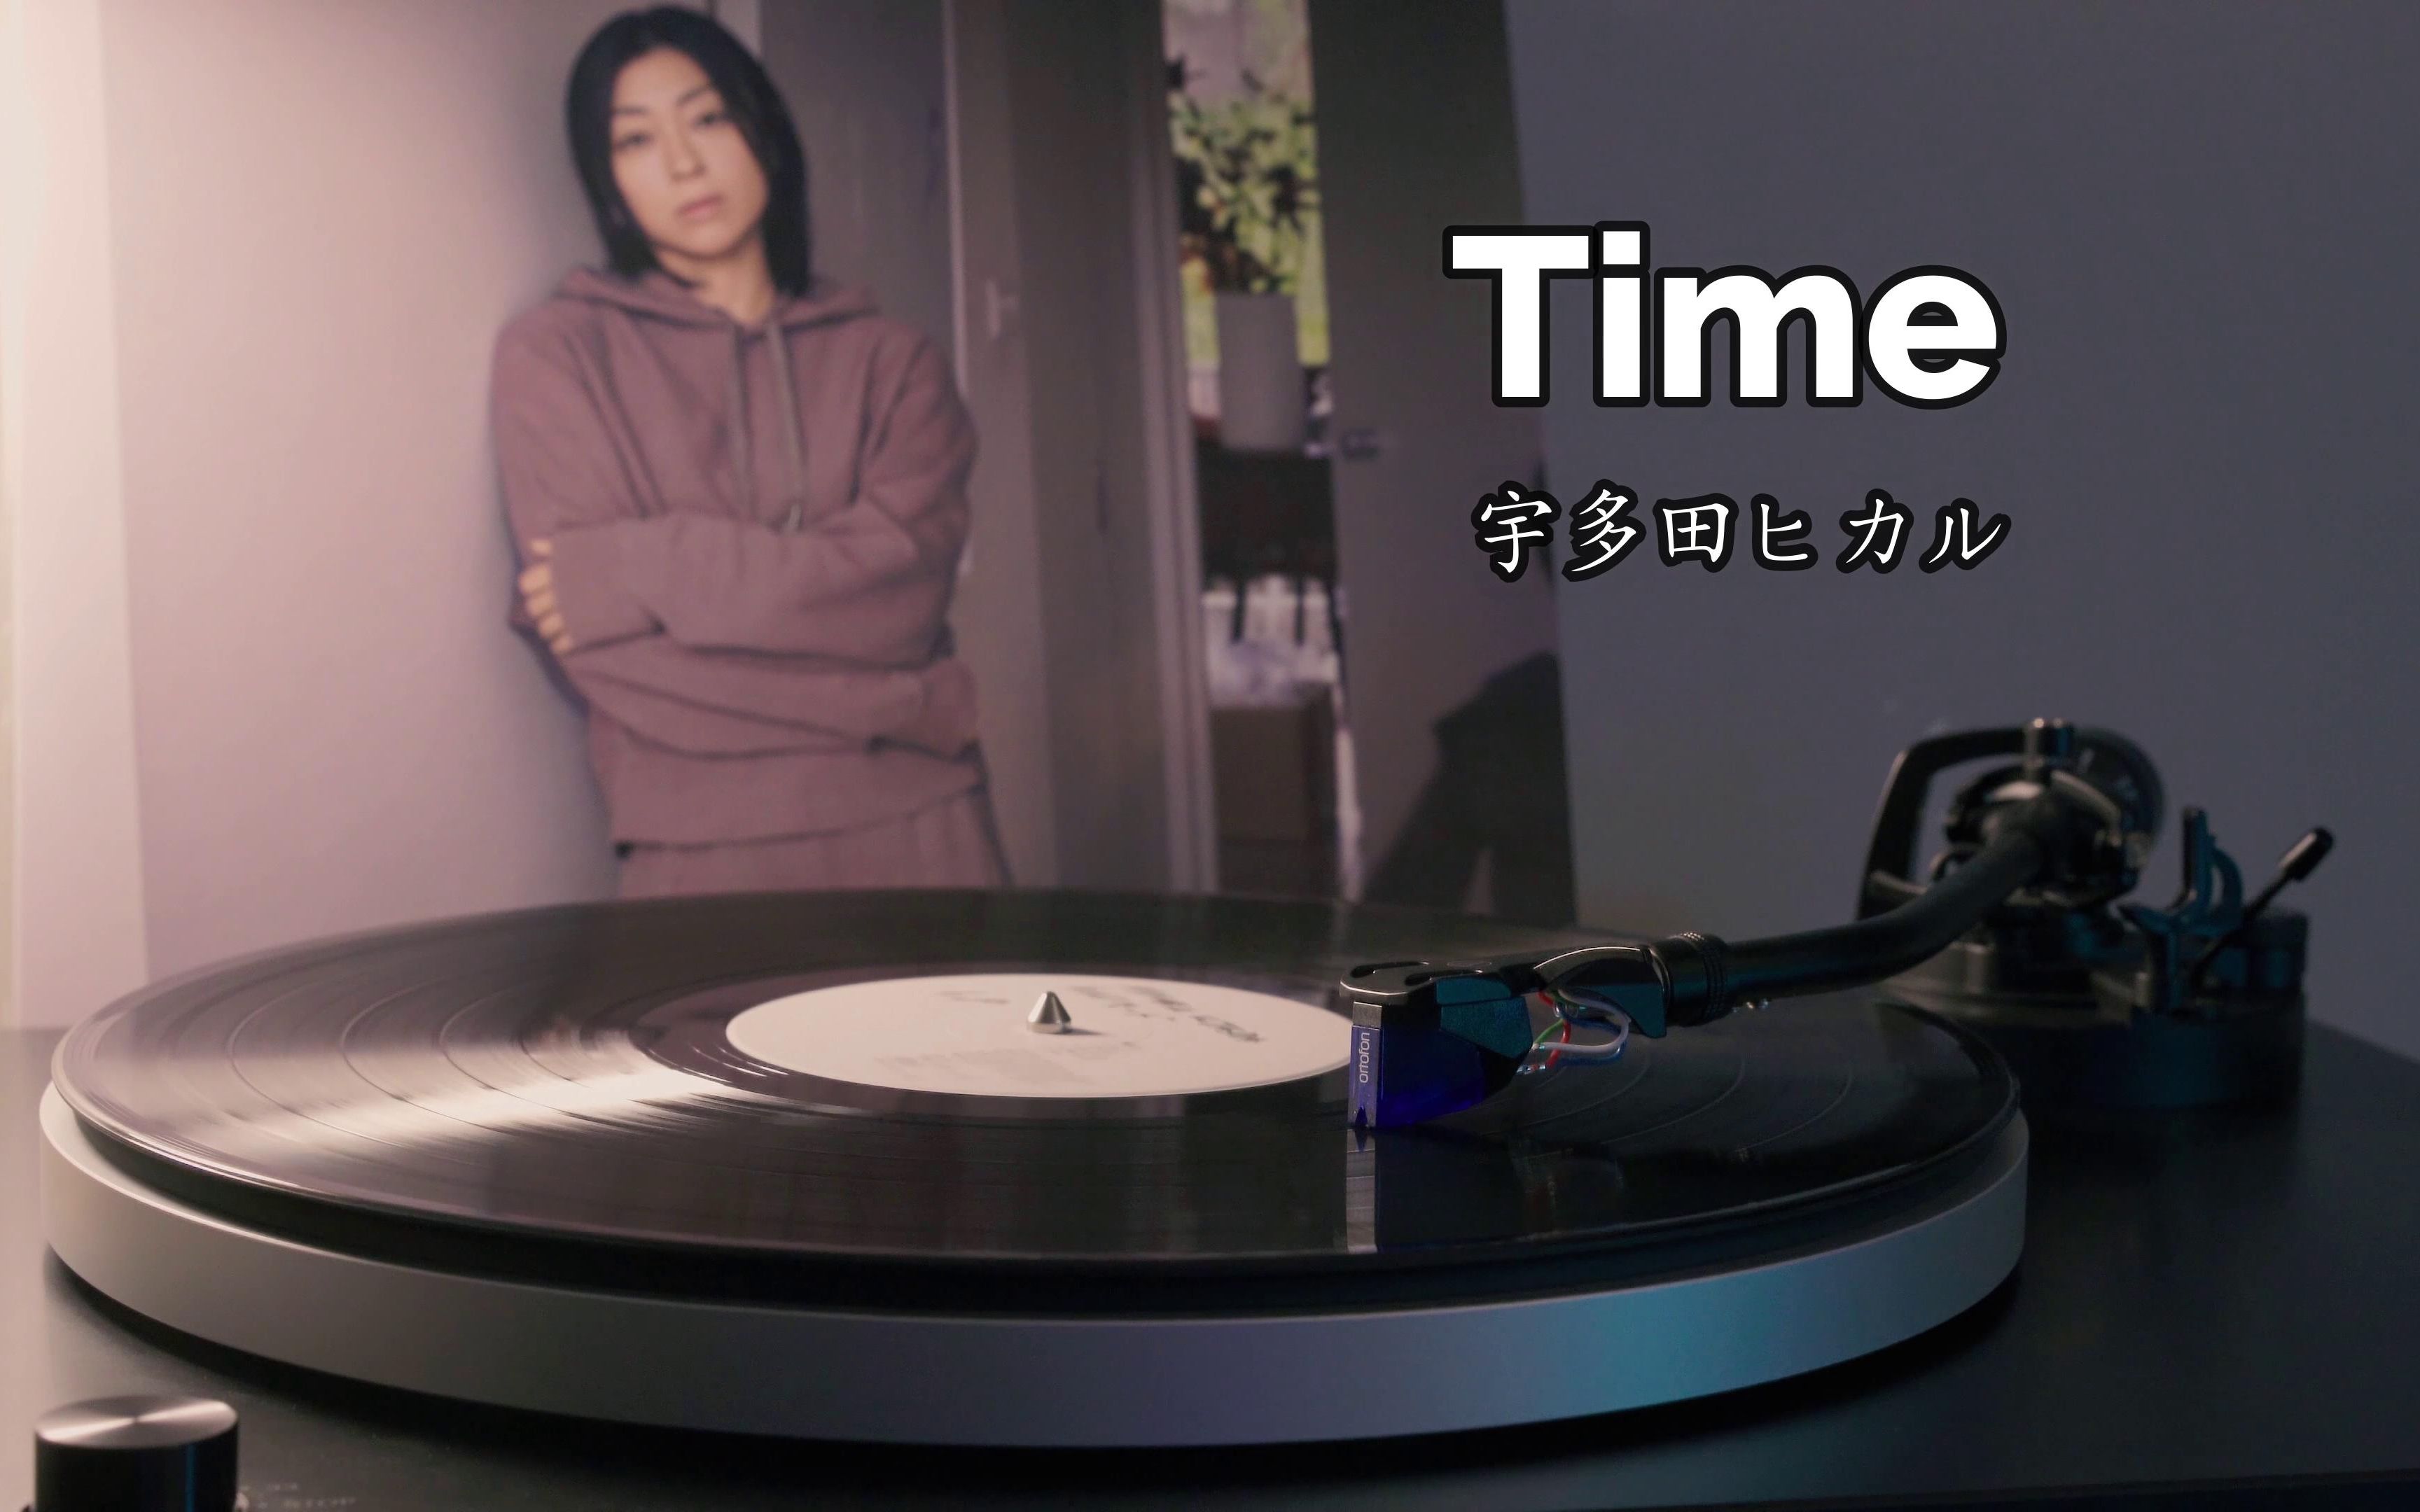 【4K】宇多田光《Time》高音质黑胶唱片试听